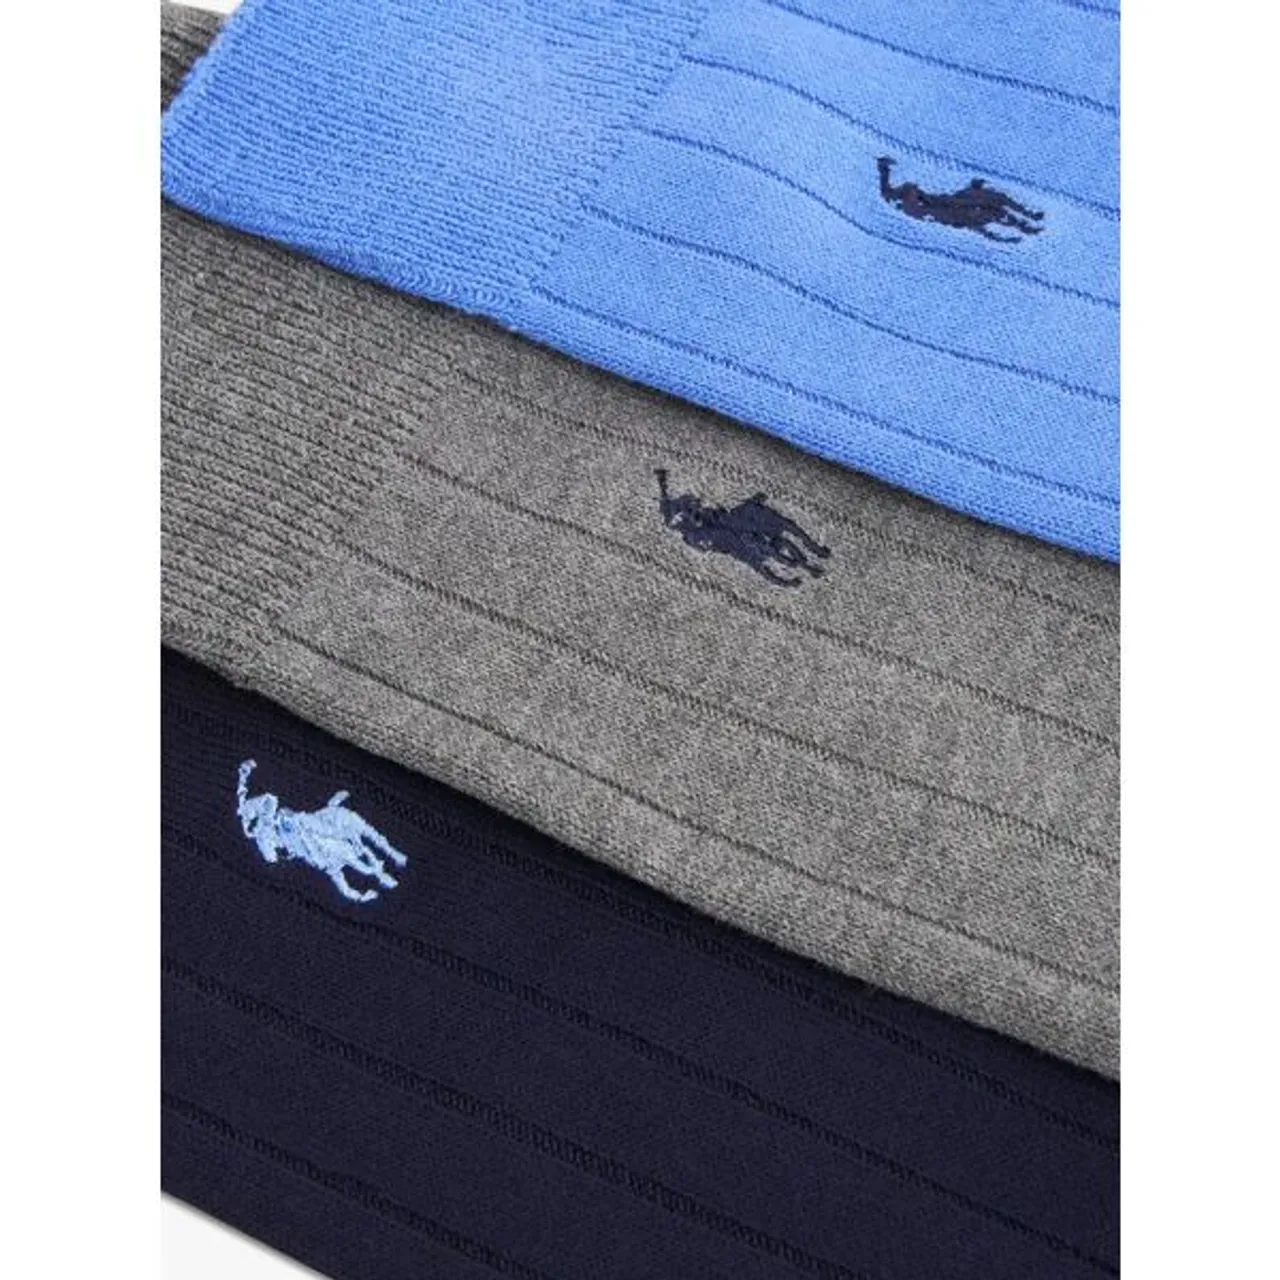 Polo Ralph Lauren Soft Rib Ankle Socks, Pack of 3, Bright Blue/Grey/Navy - Bright Blue/Grey/Navy - Male